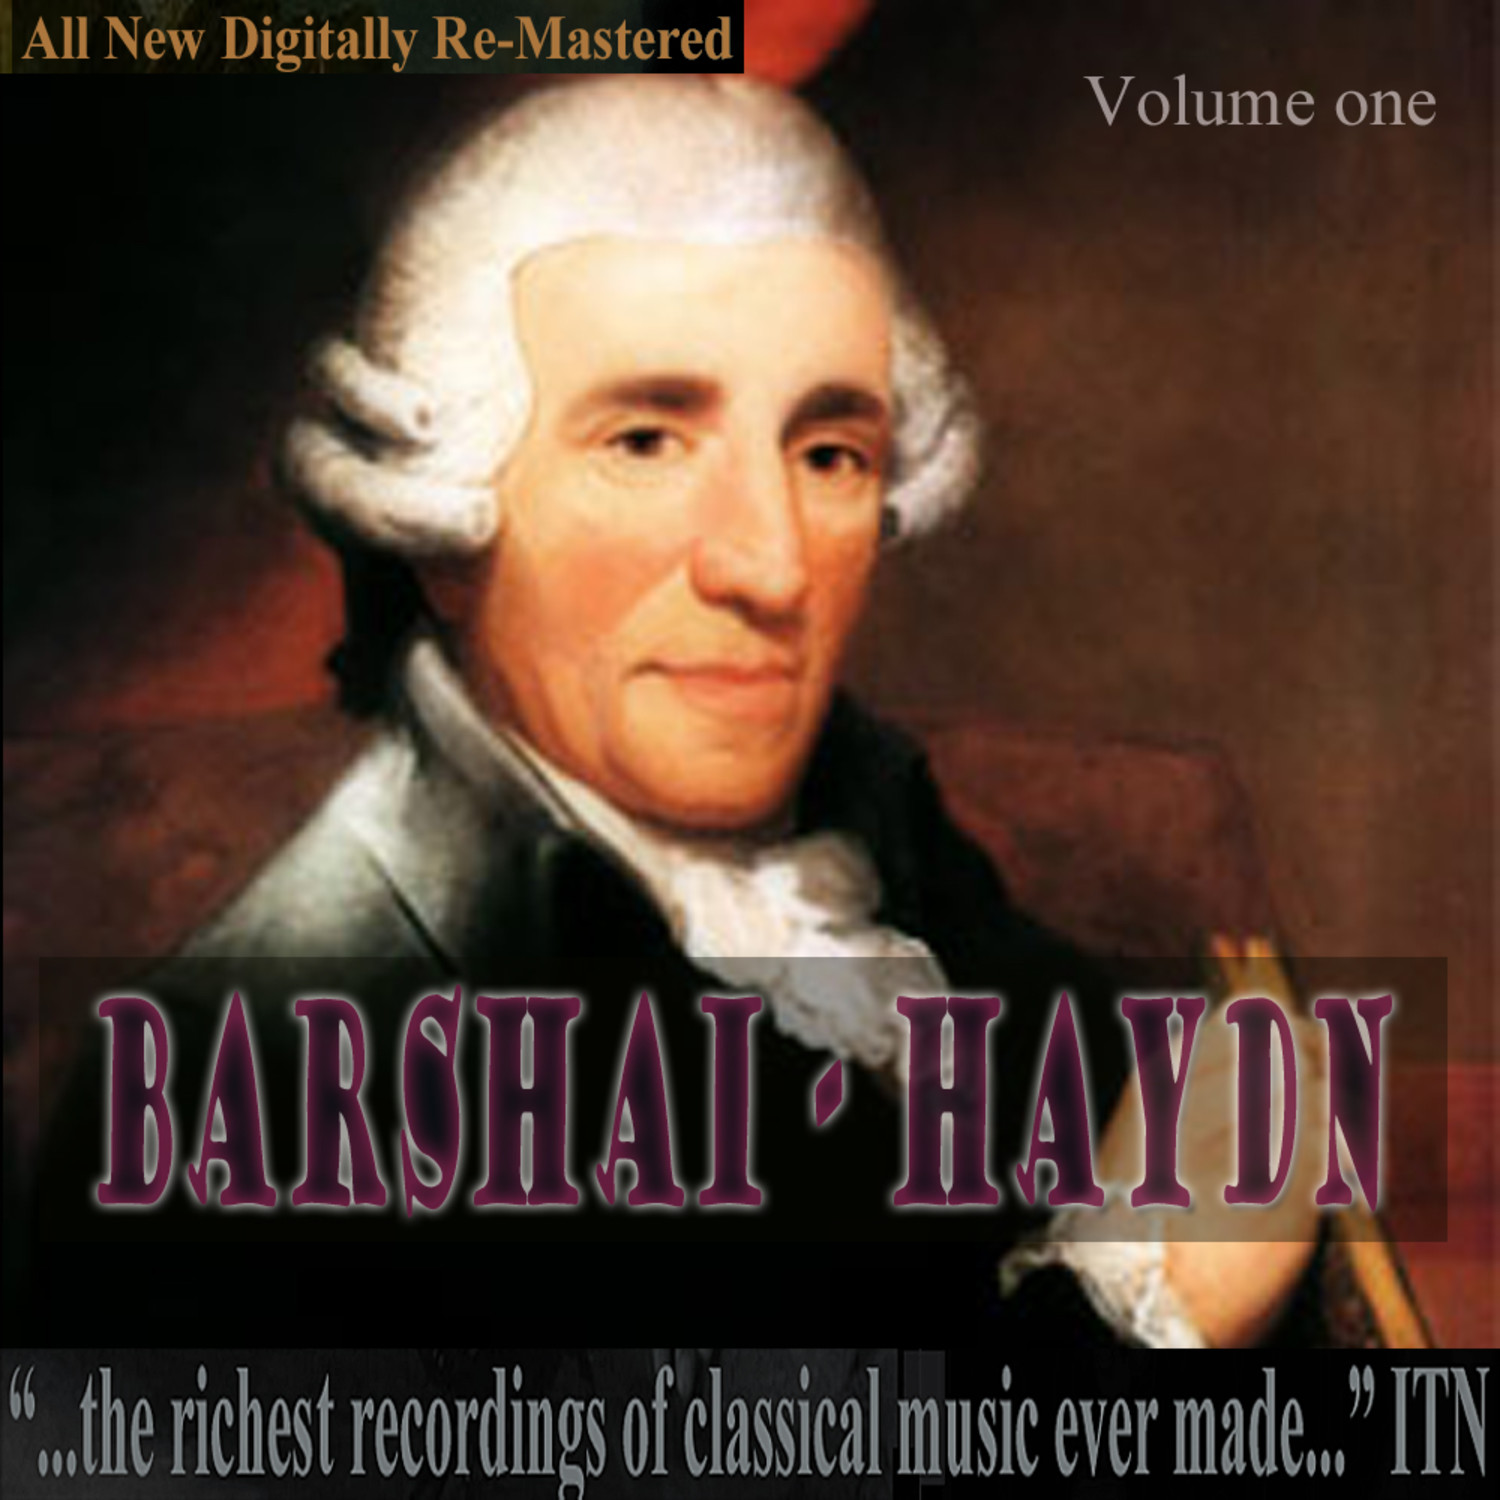 Barshai - Haydn Volume One